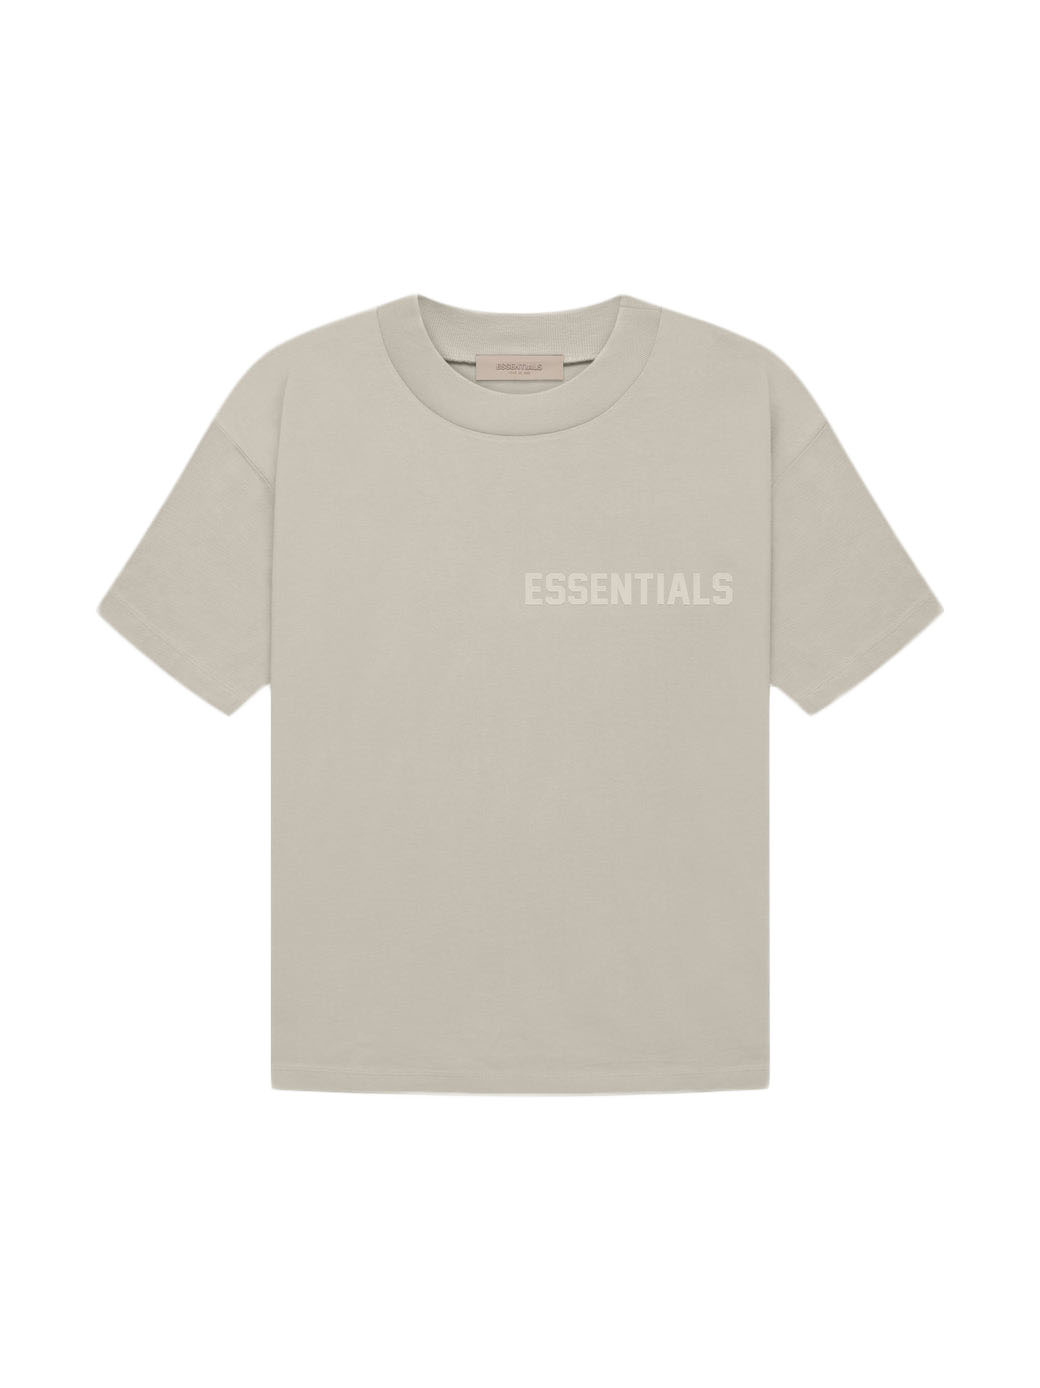 Buy Essentials Tops Streetwear - StockX